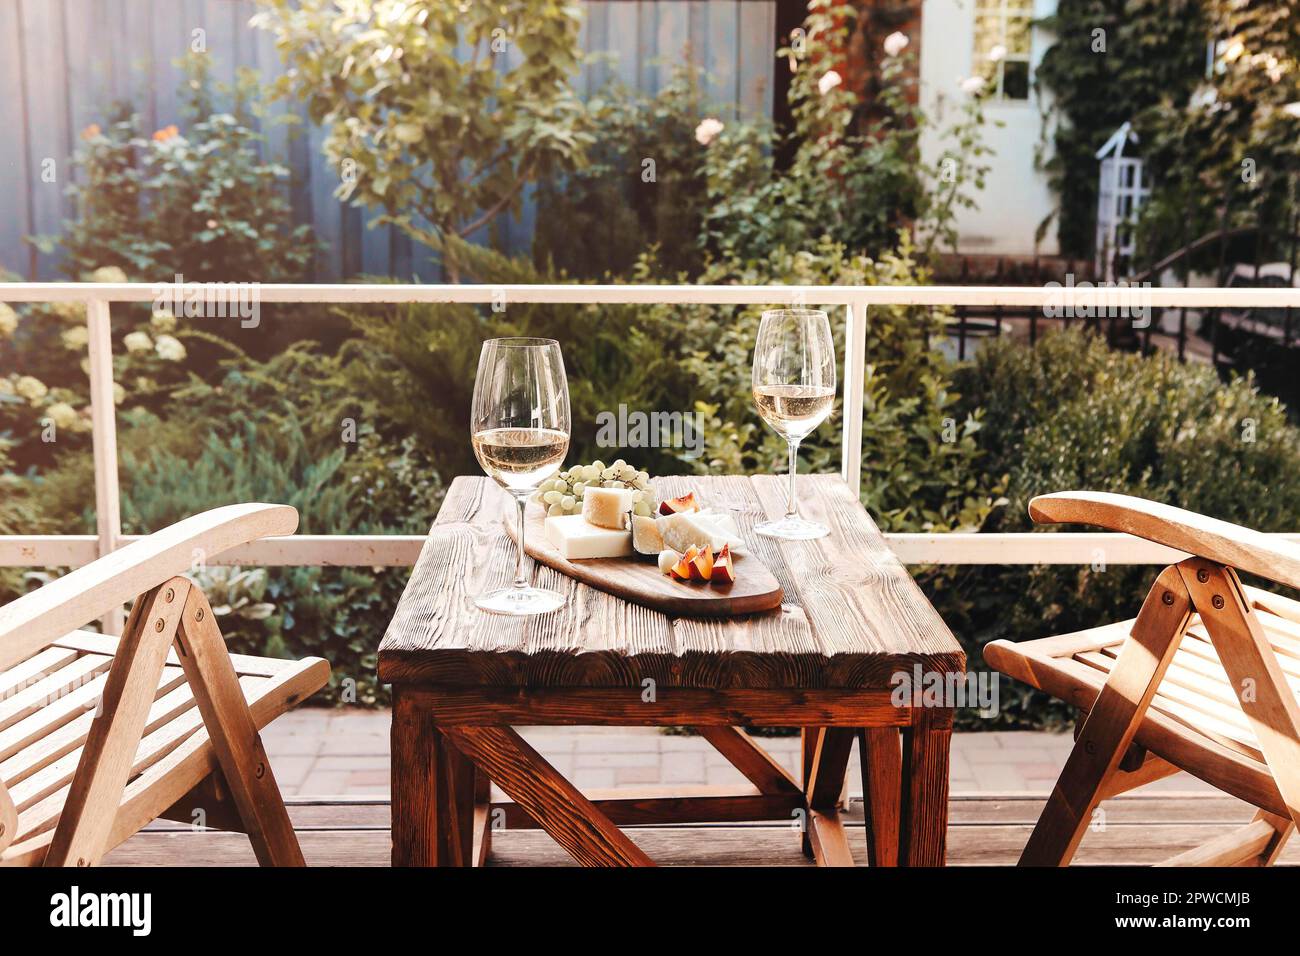 Gläser Wein und Teller mit Obst und Käse auf Holztisch neben Stühlen an sonnigen Sommertagen auf der Terrasse platziert Stockfoto